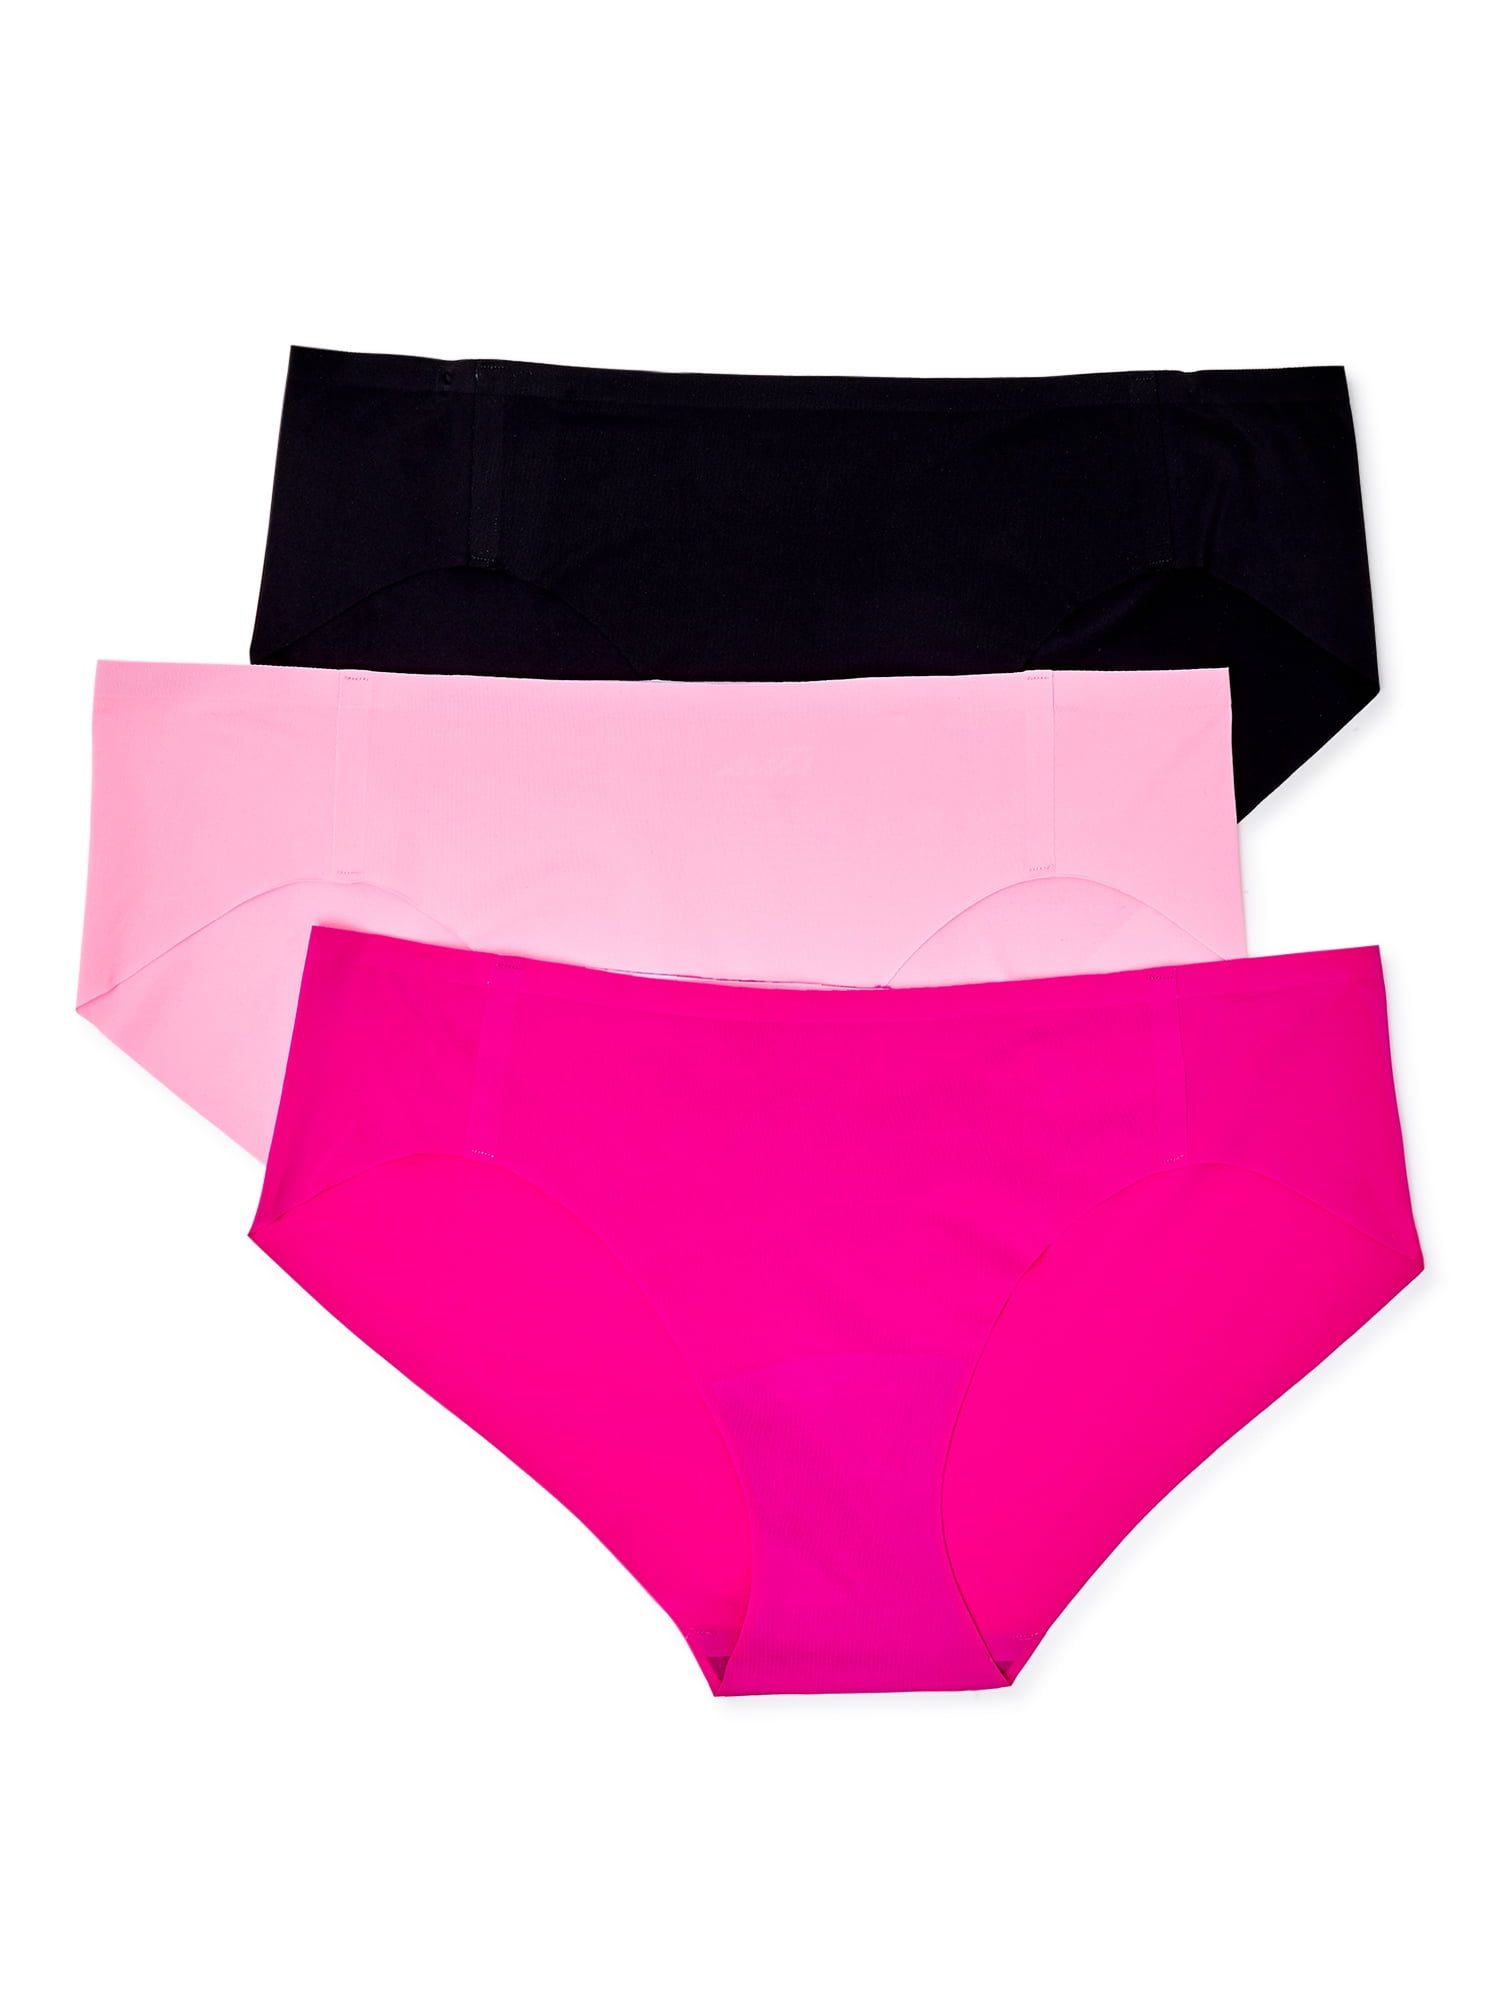 Buy Zivame No Panty Line Laser Cut Pink Cheetah N Solid Briefs